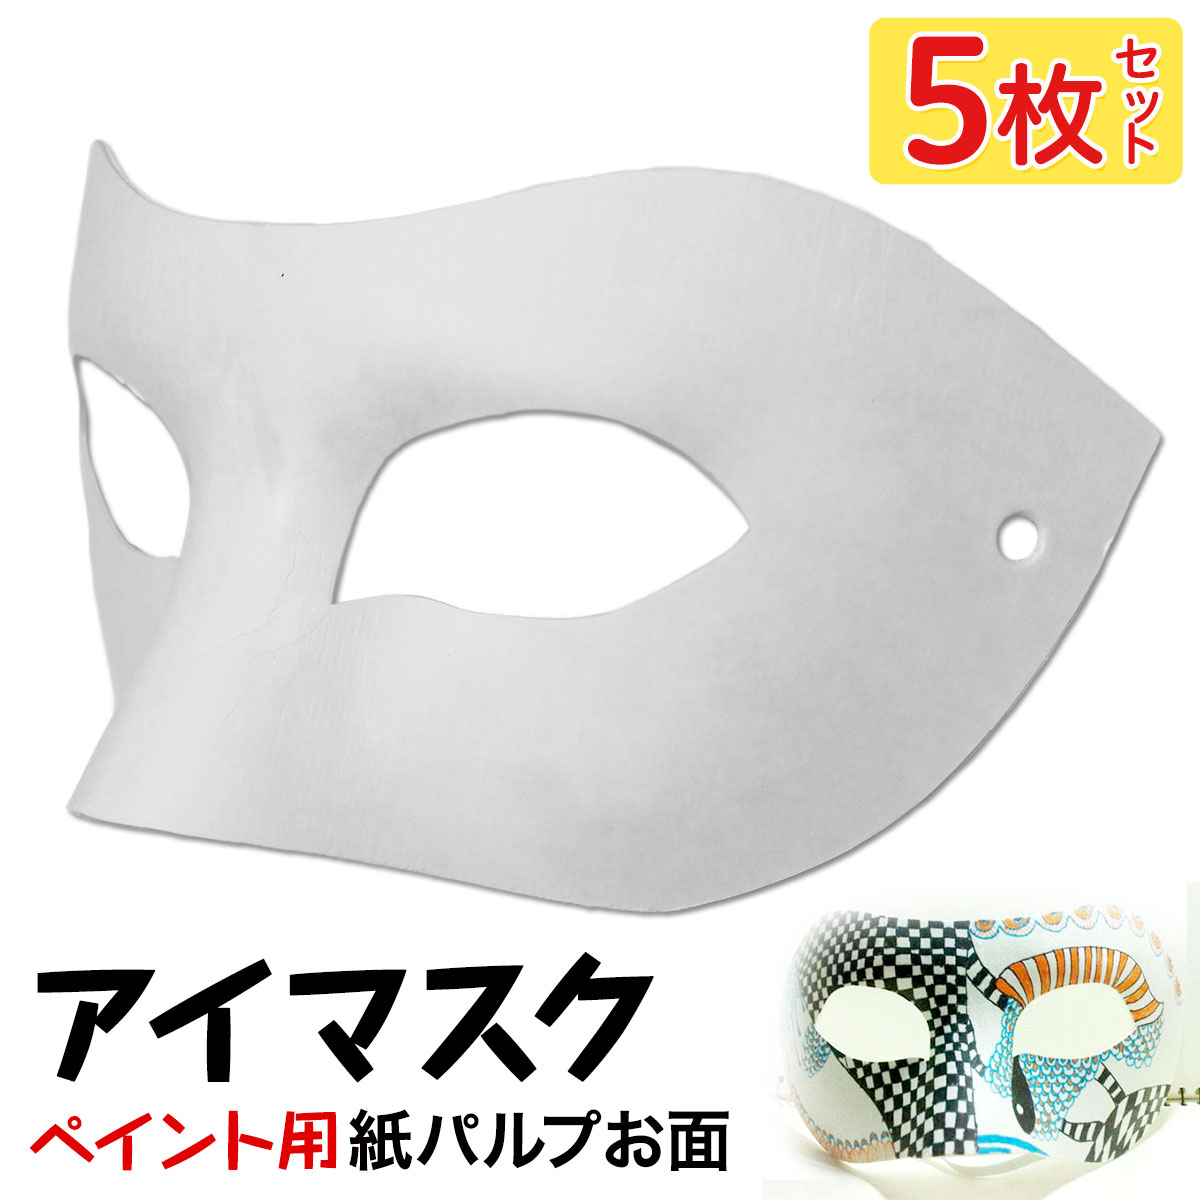 【エントリーでP10倍】 お面 ホワイトマスク アイマスク 仮面 無地 ペイント 飾り パーティー 紙パルプ製 5枚セット